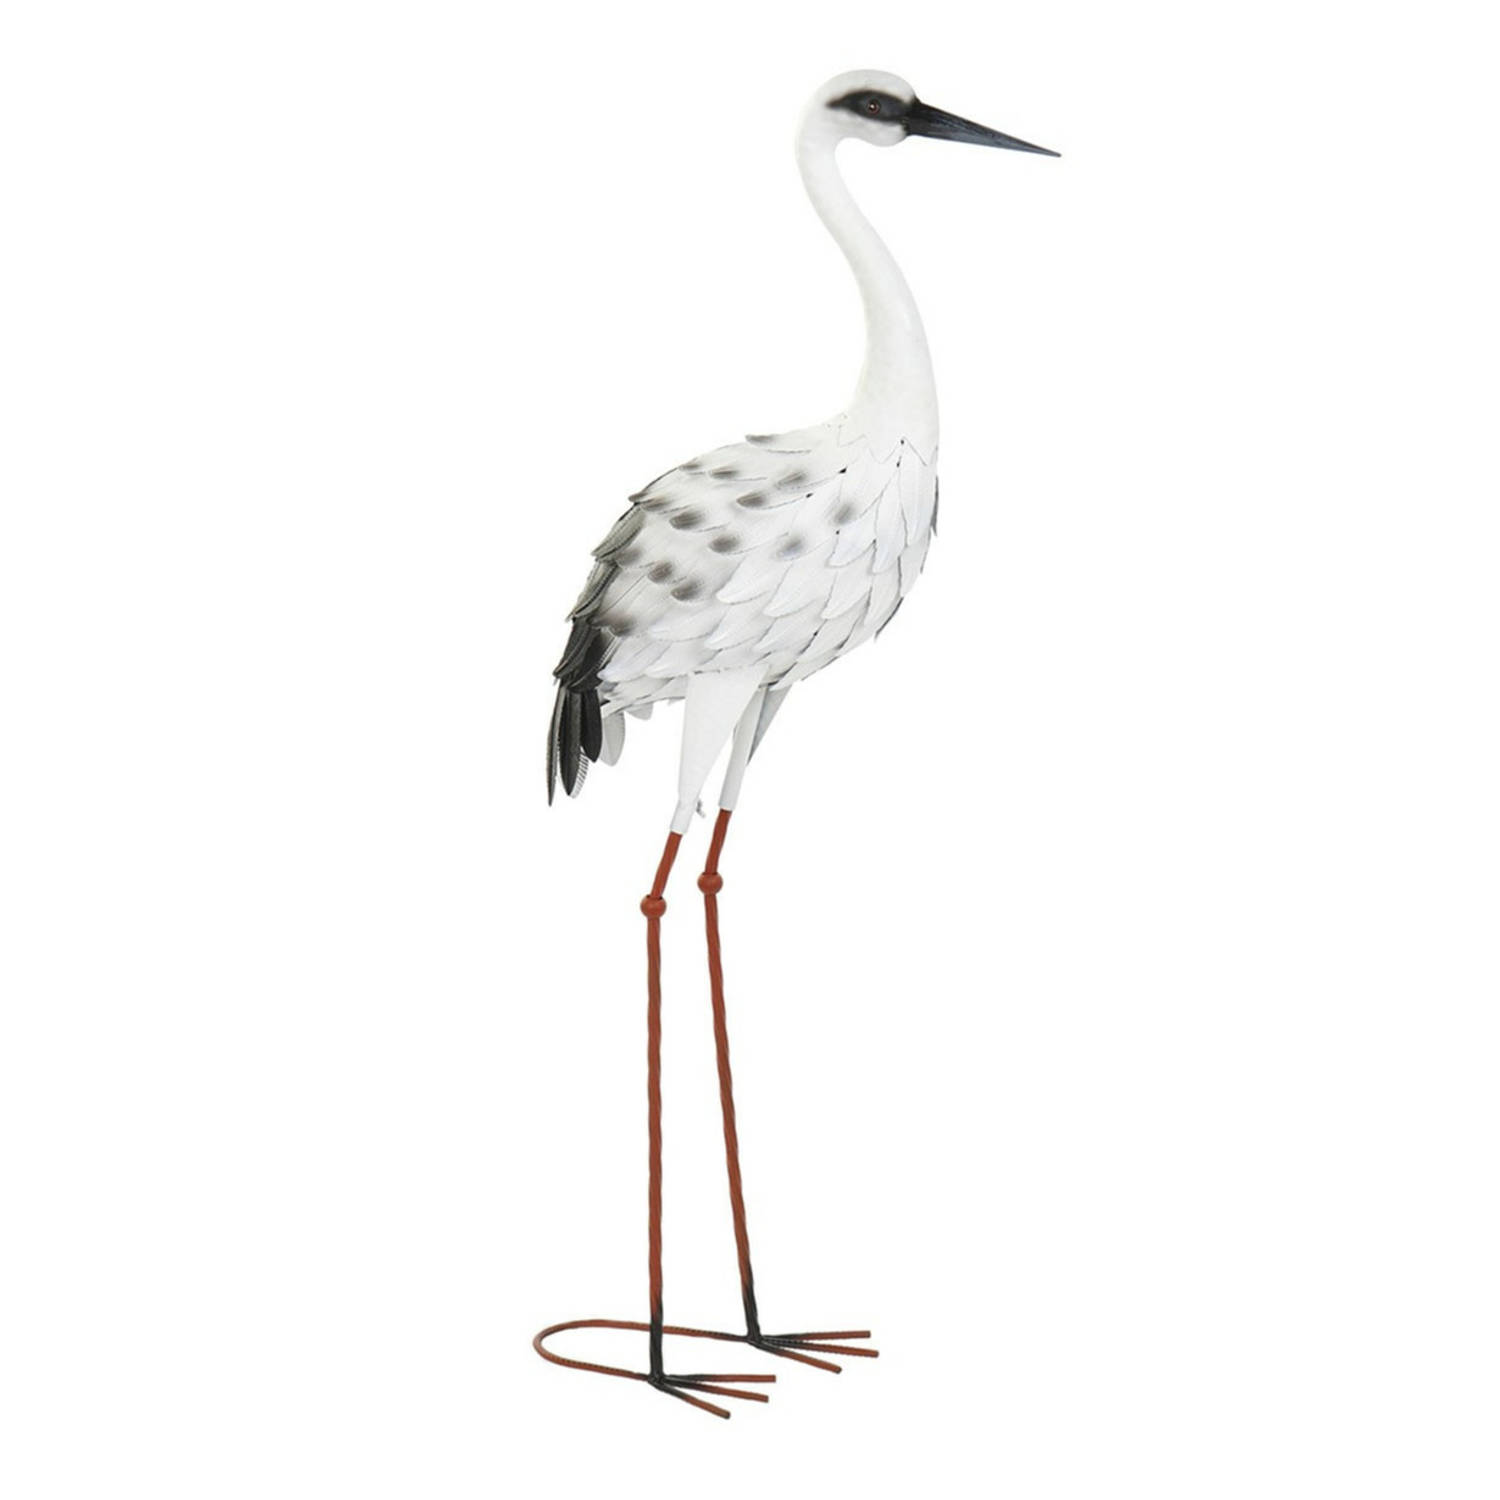 Items Tuin decoratie dieren-vogel beeld Metaal Reiger 18 x 97 cm buiten wit Beeldjes